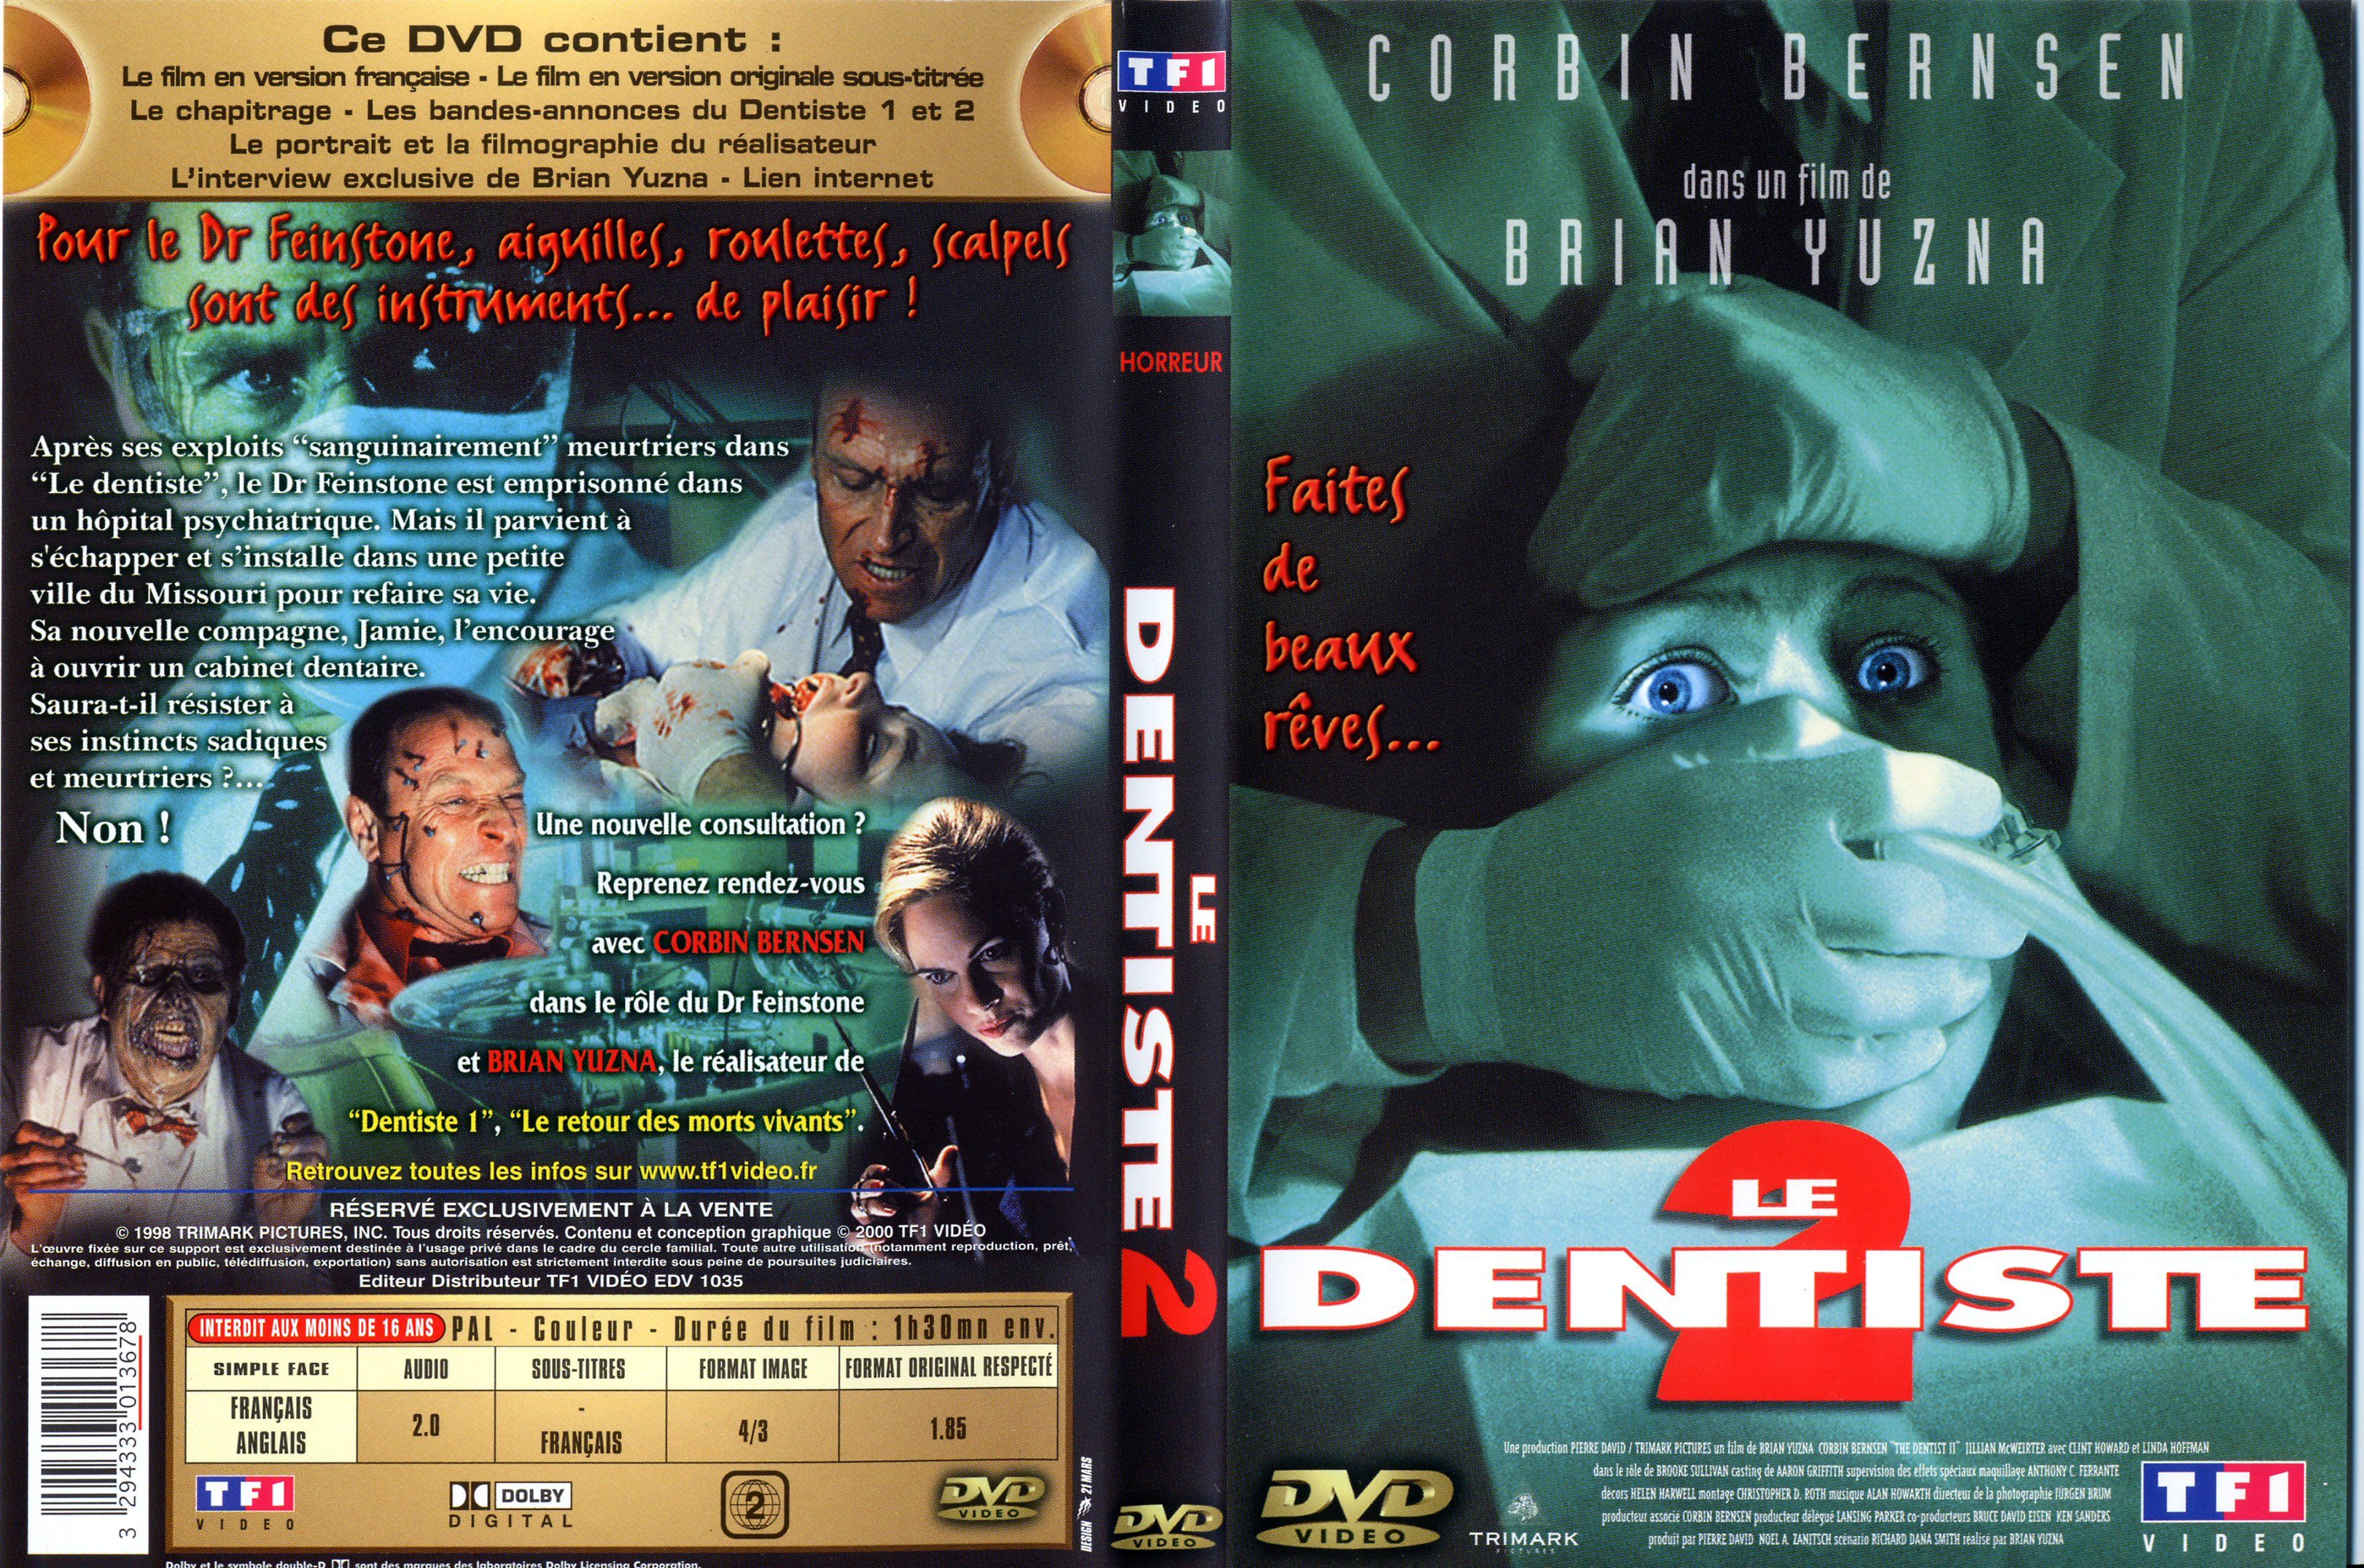 Jaquette DVD Le dentiste 2